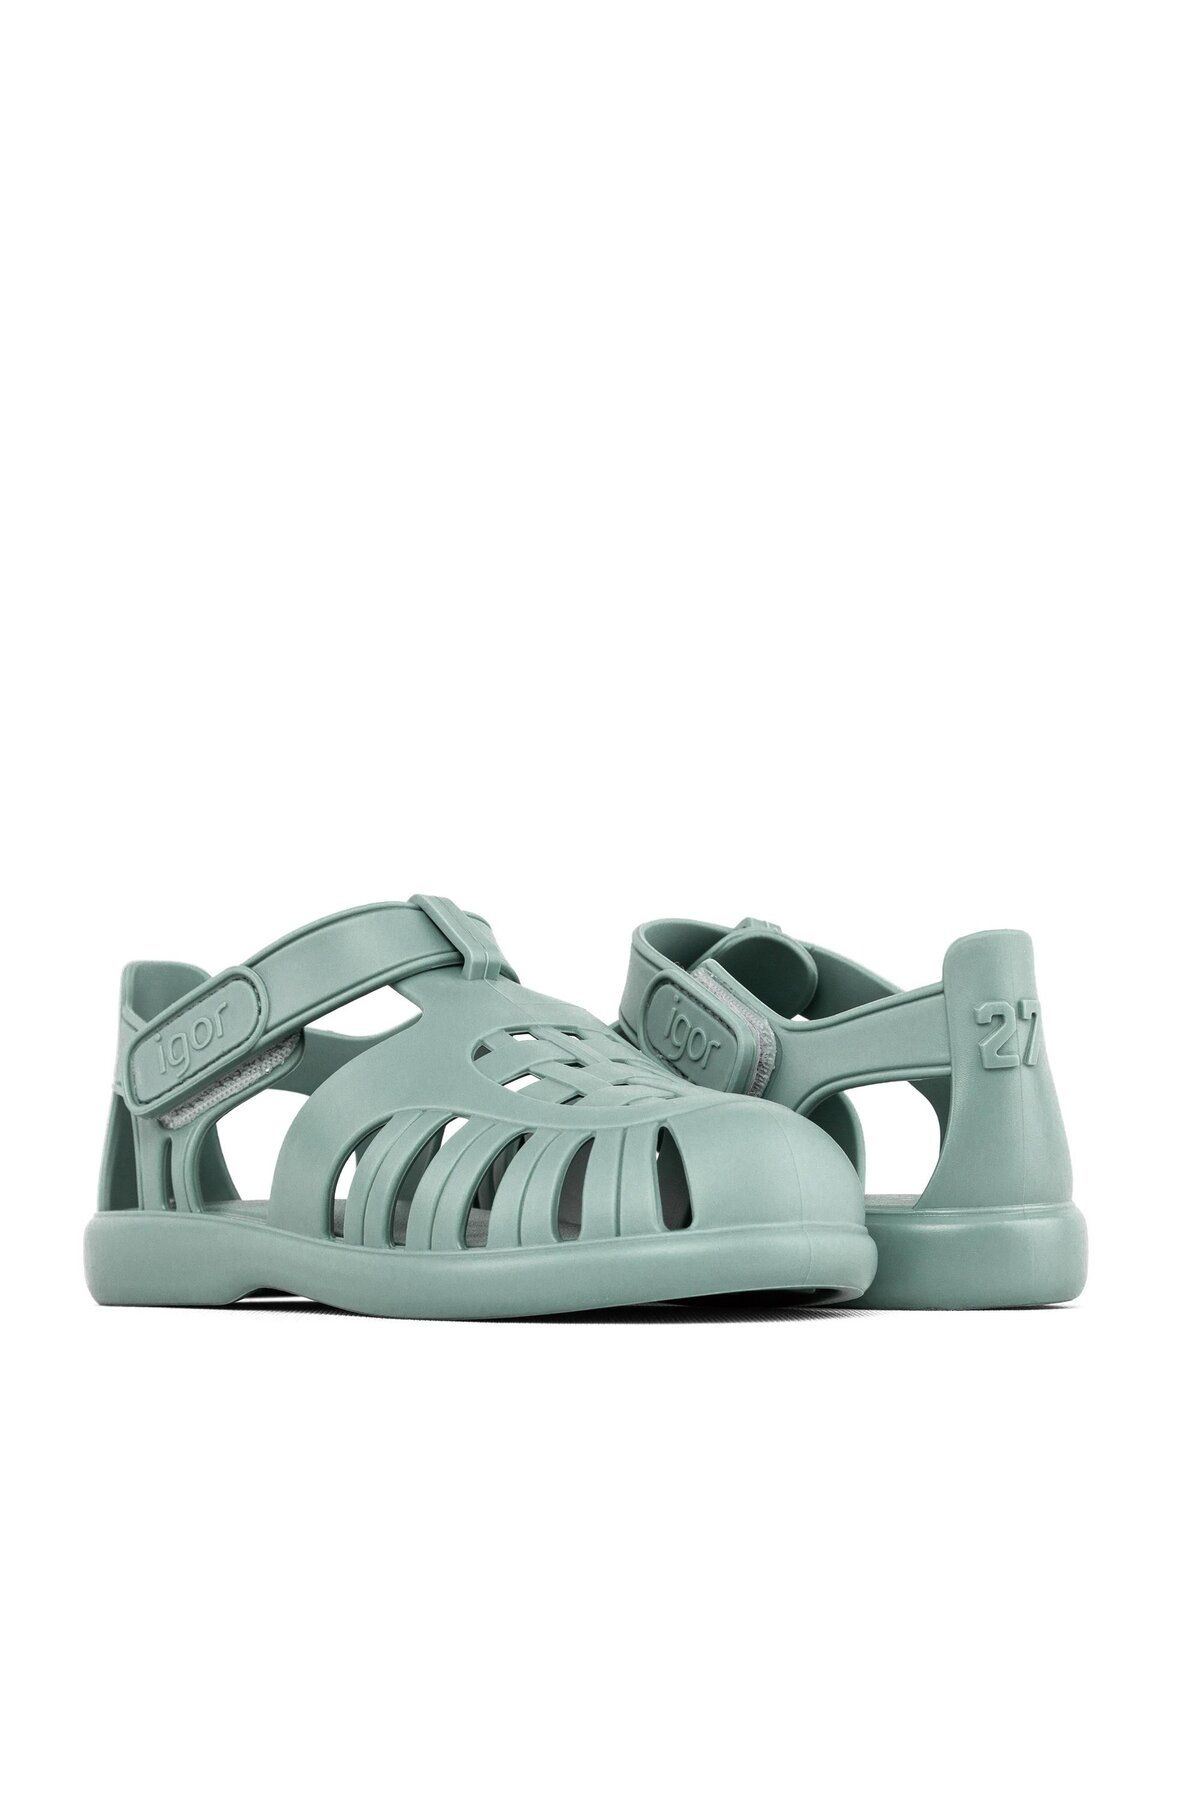 IGOR Çocuk Cırtlı Sandalet S10271 Tobby Solid